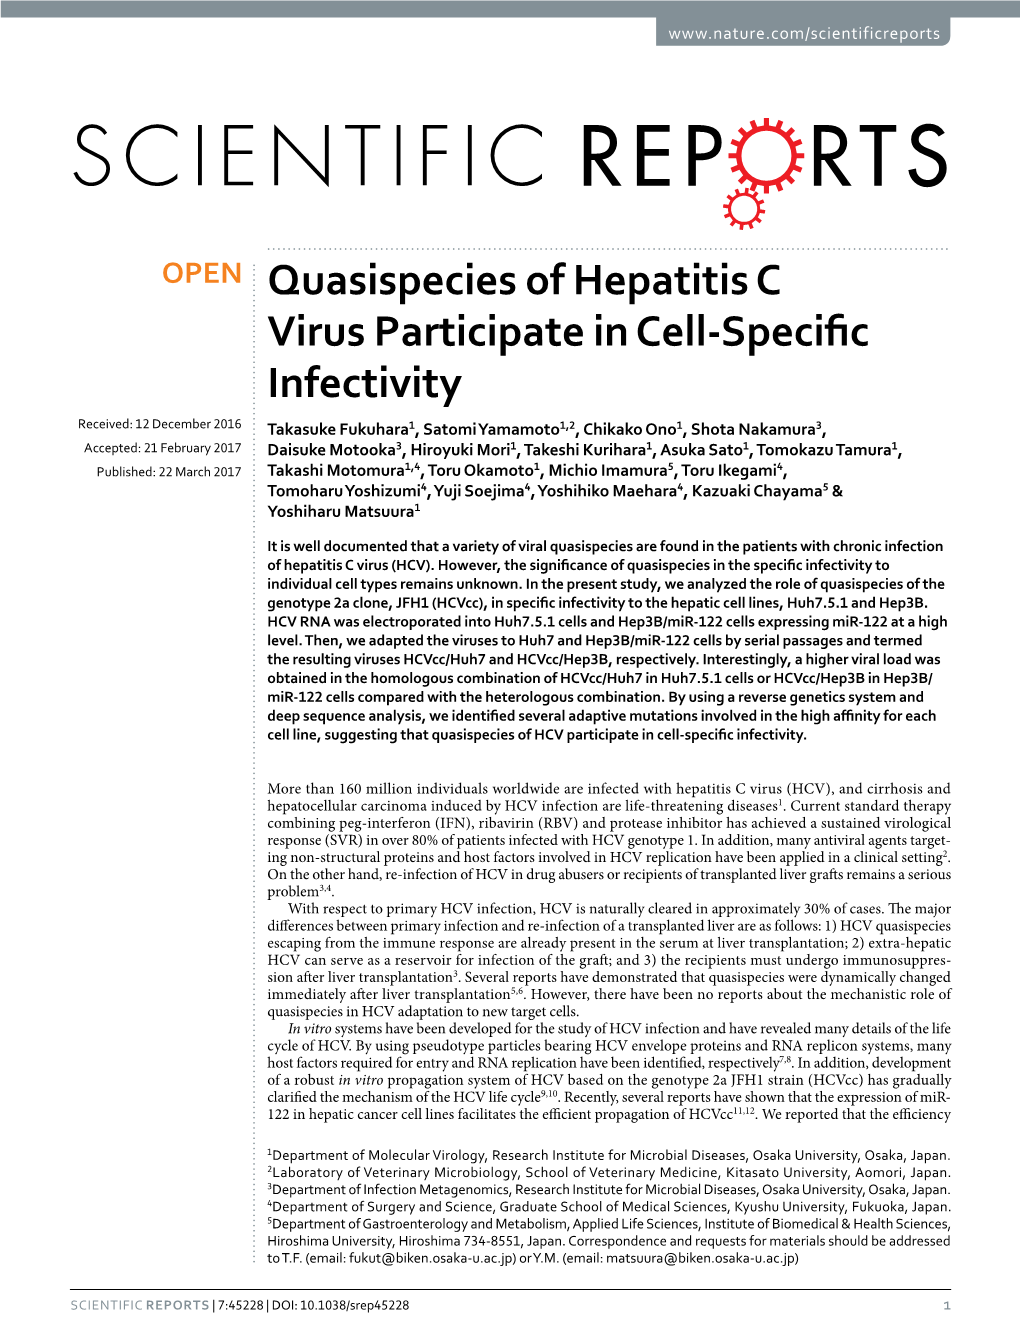 Quasispecies of Hepatitis C Virus Participate in Cell-Specific Infectivity